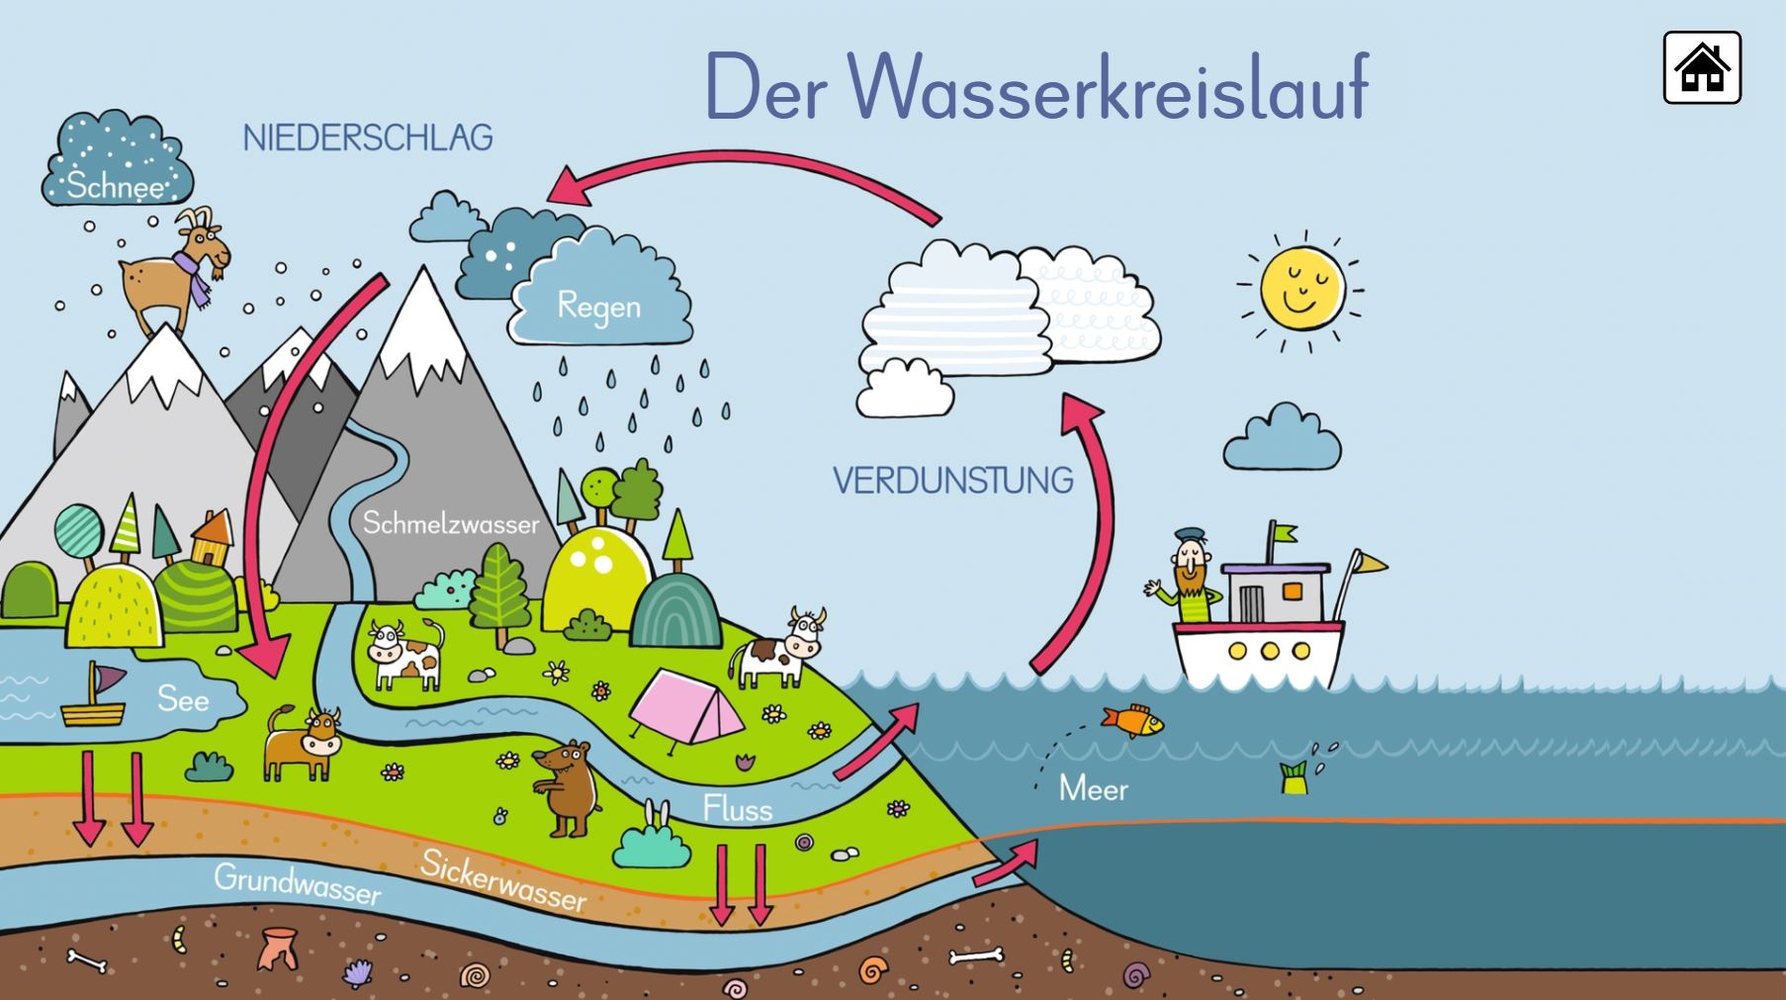 6 digitale Merk-Bilder für den Sachunterricht: Die Ernährungspyramide, Europa, Deutschland, Der Wasserkreislauf, Unsere Bäume, Unser Sonnensystem - Premium-Version - Mac